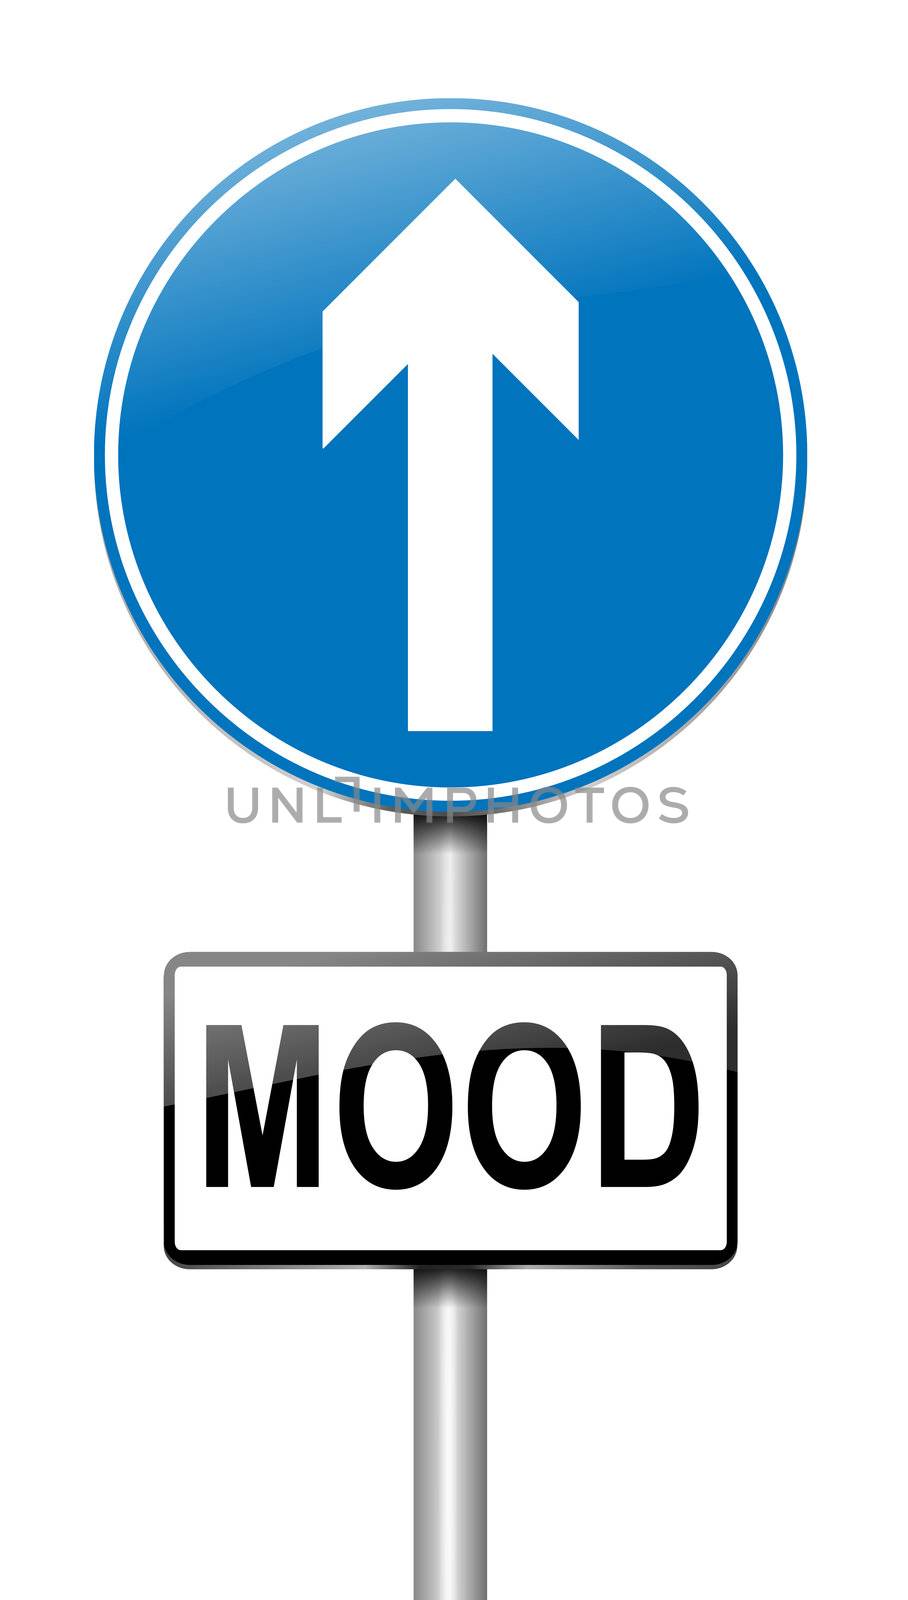 Mood lift. by 72soul